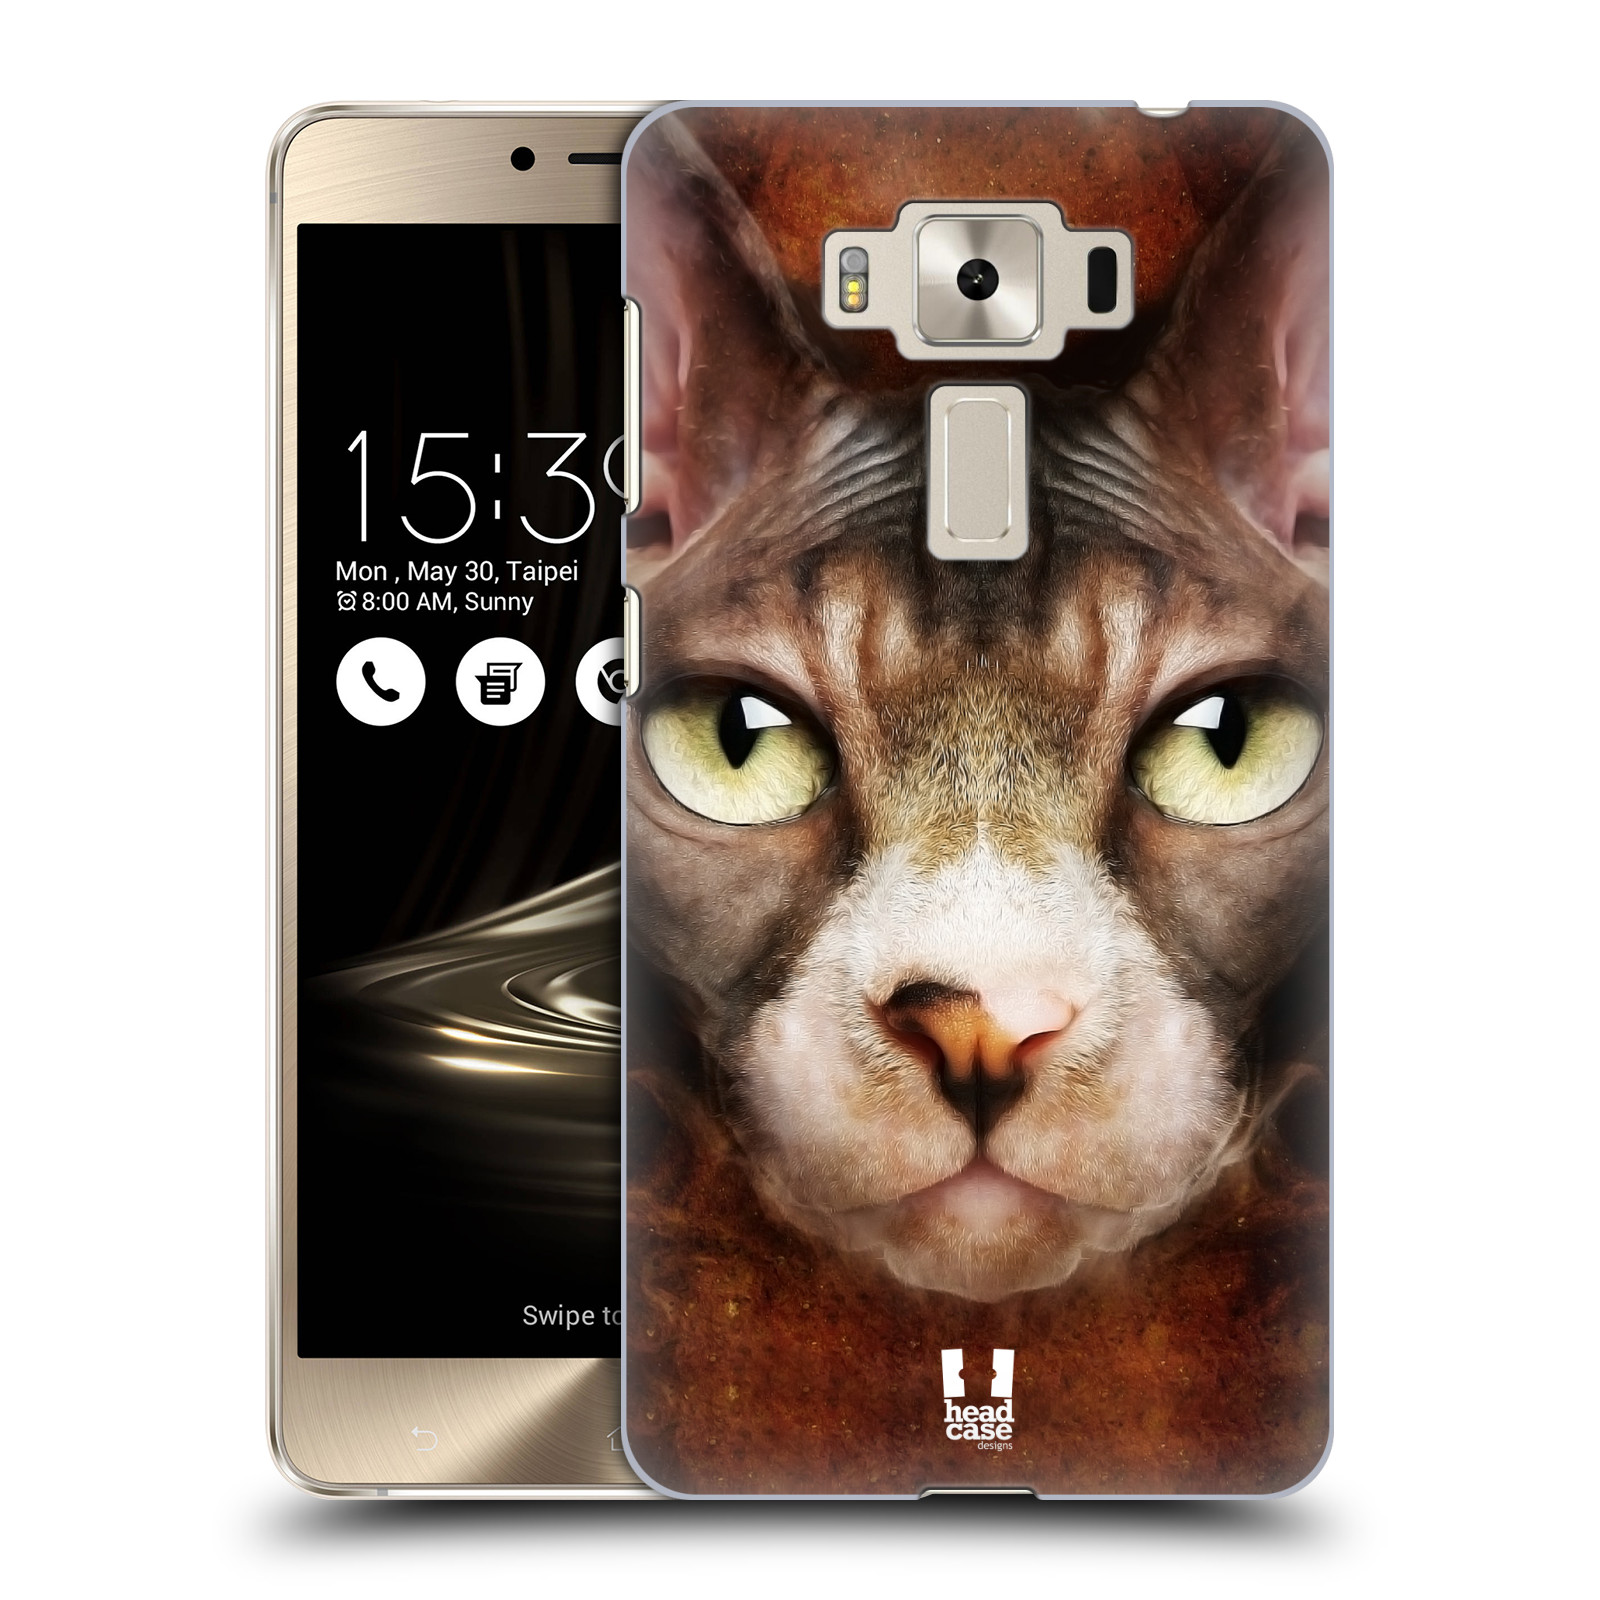 HEAD CASE plastový obal na mobil Asus Zenfone 3 DELUXE ZS550KL vzor Zvířecí tváře kočka sphynx